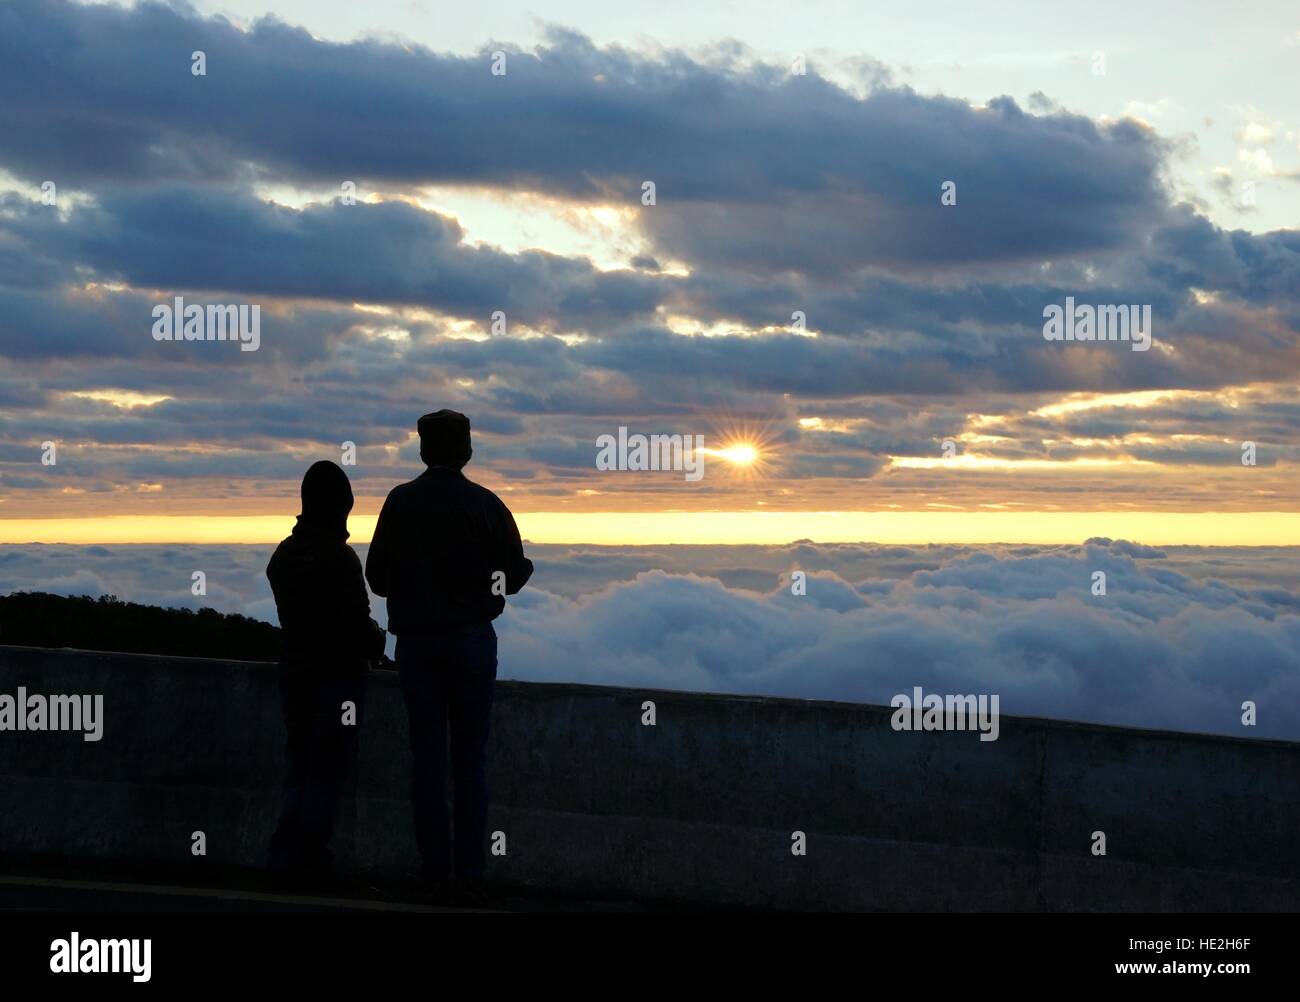 Silueta Pareja mirando el hermoso amanecer en la cima de la montaña con vistas al valle de misty. Mañana paisaje de montaña con onda de niebla Foto de stock